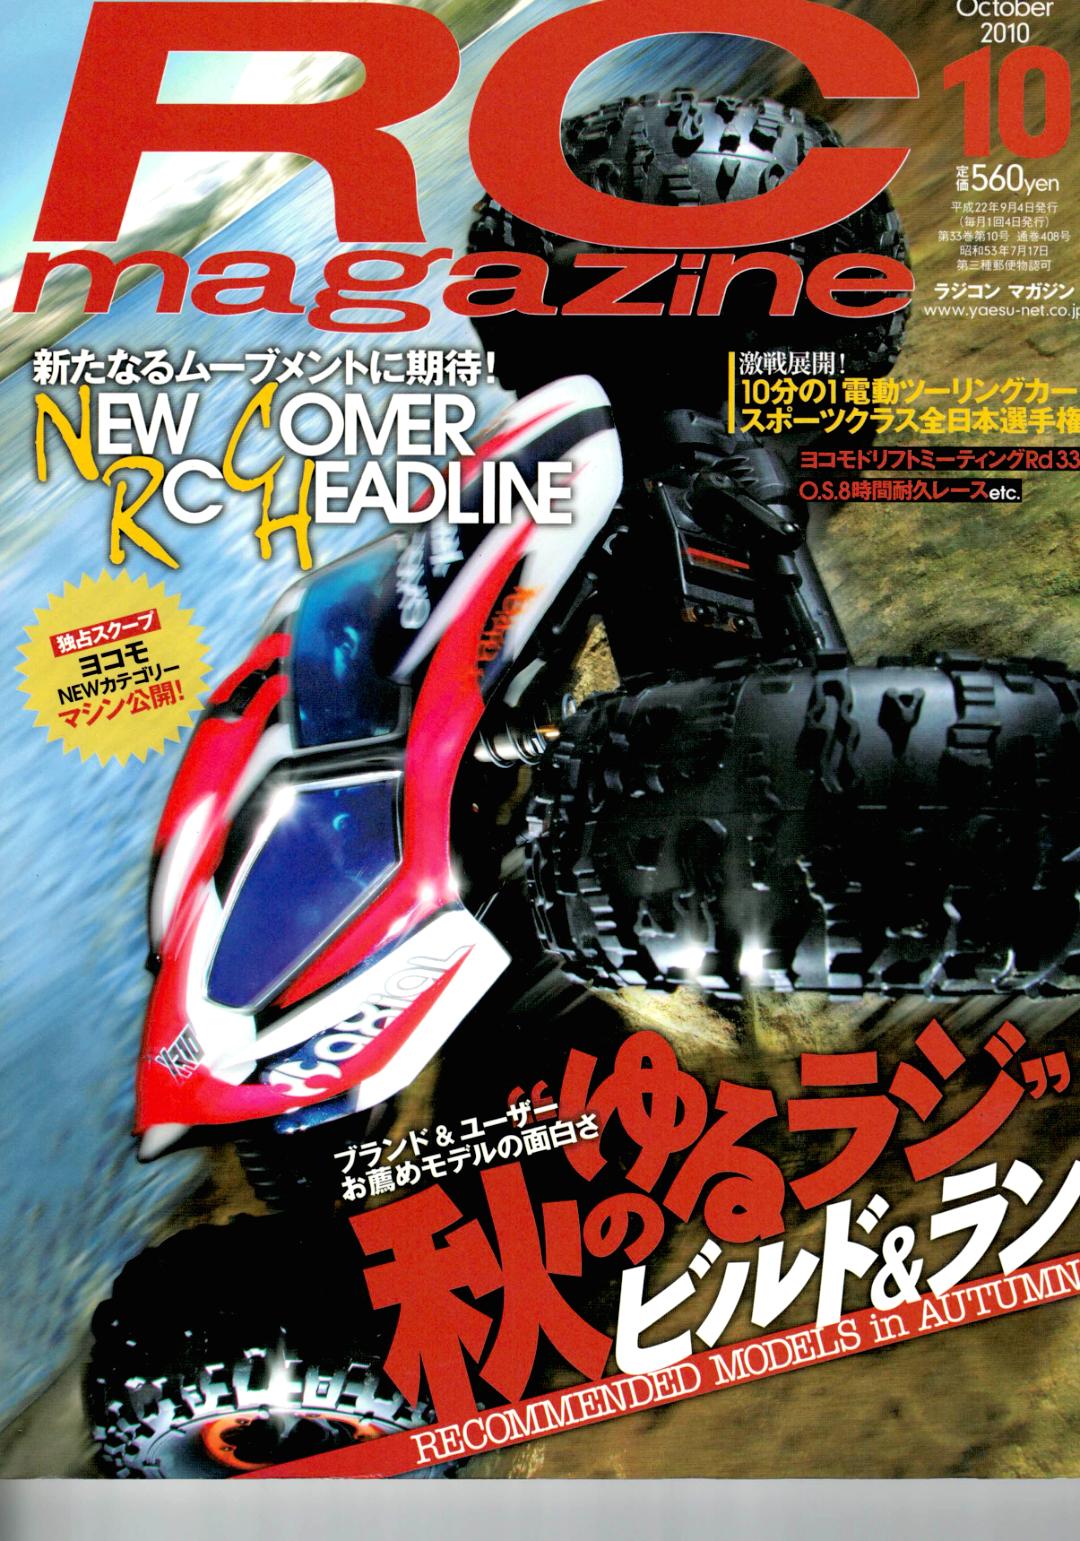 RC magazine (ラジコンマガジン) 2010年 10月号 (新品在庫処分品)画像